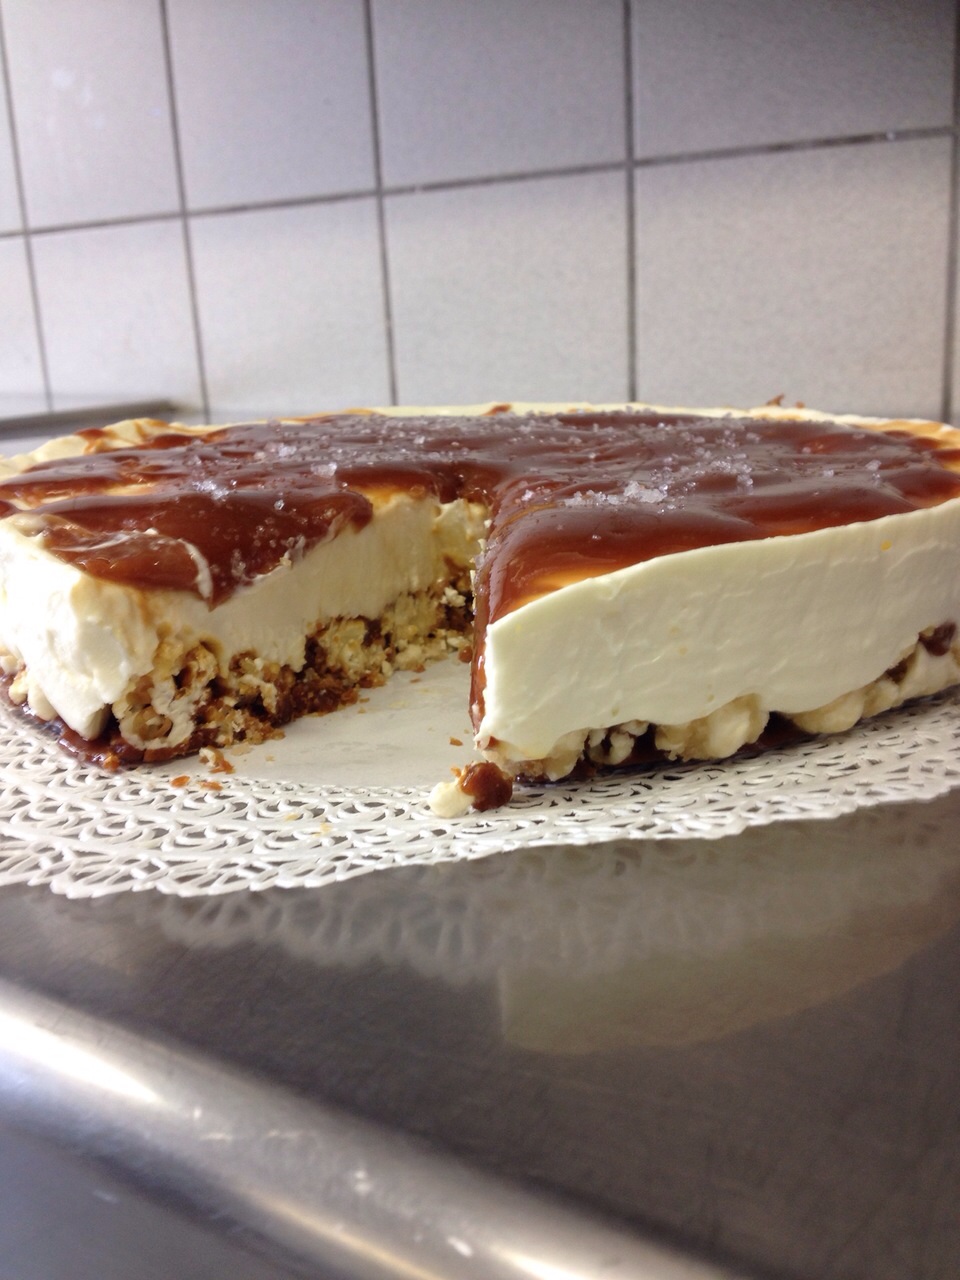 Cheesecake a freddo con base di mais scoppiato caramellato e copertura al caramello salato6